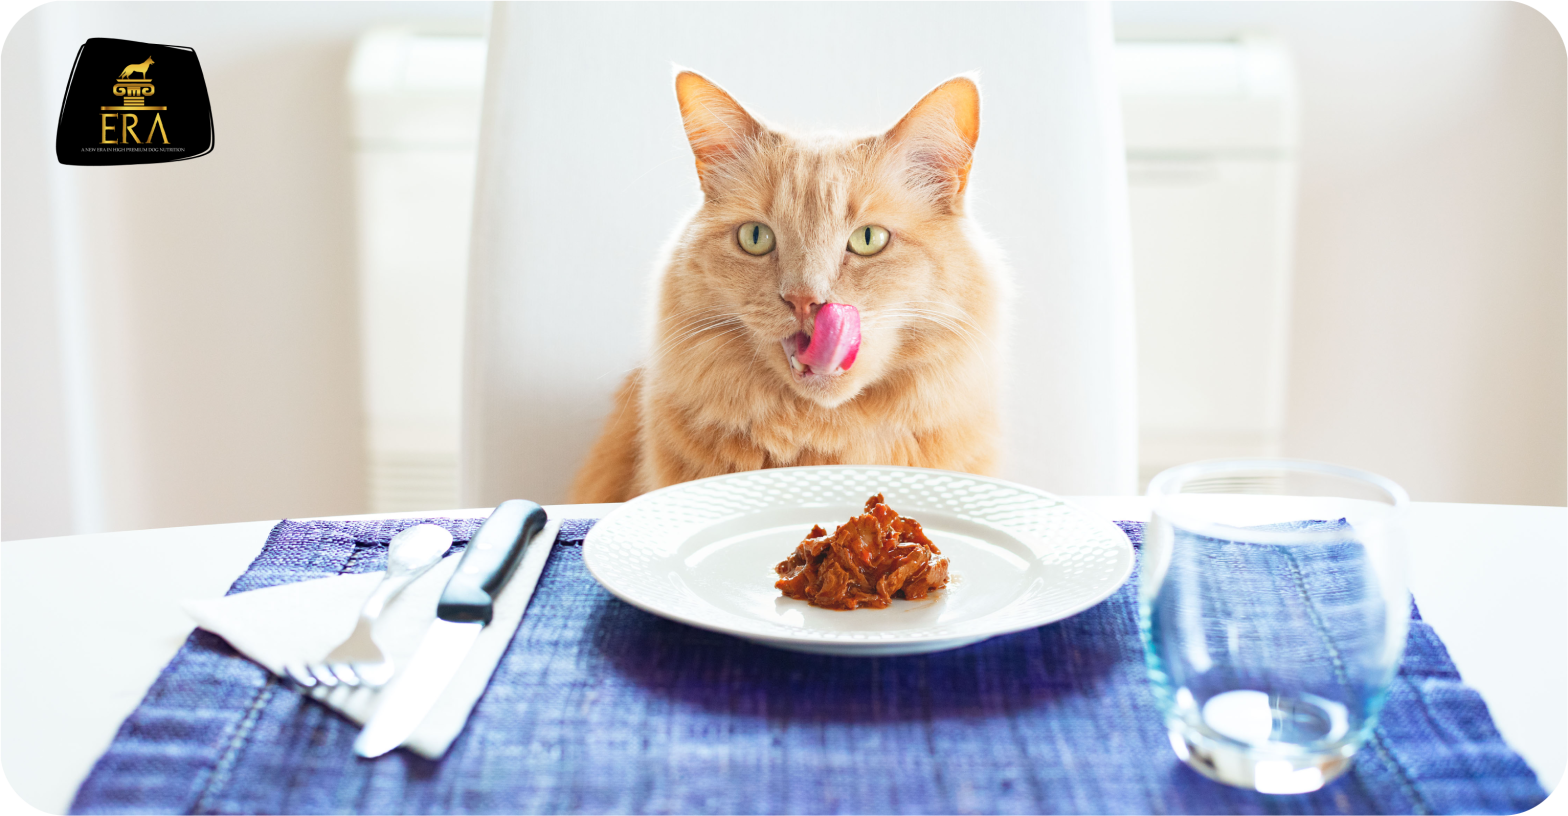 ¿Por qué es importante la comida húmeda para mi gato?